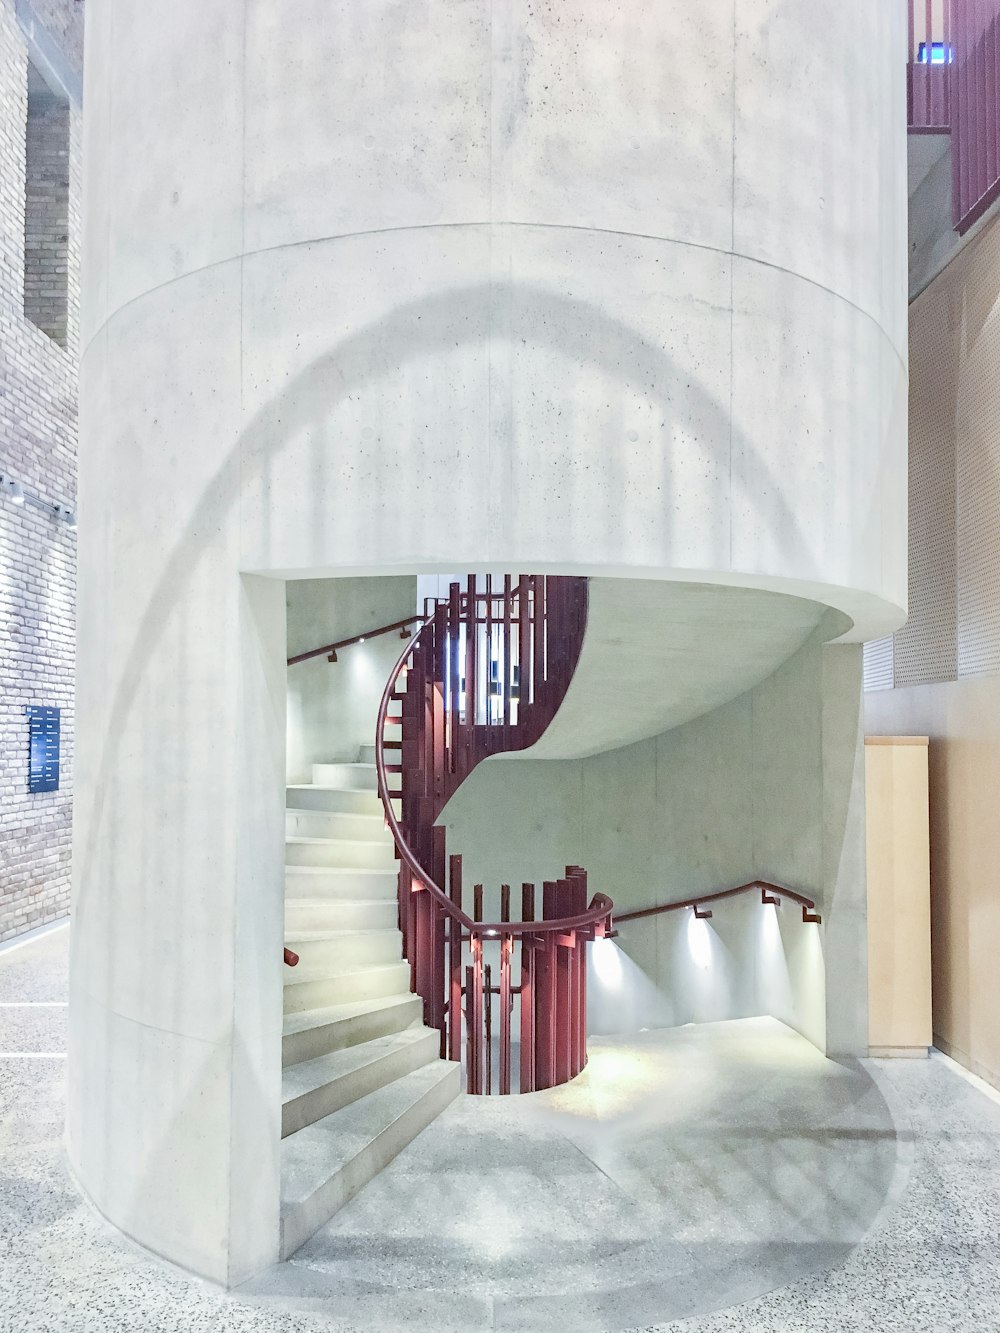 Escaliers en colimaçon vides à l’intérieur du bâtiment